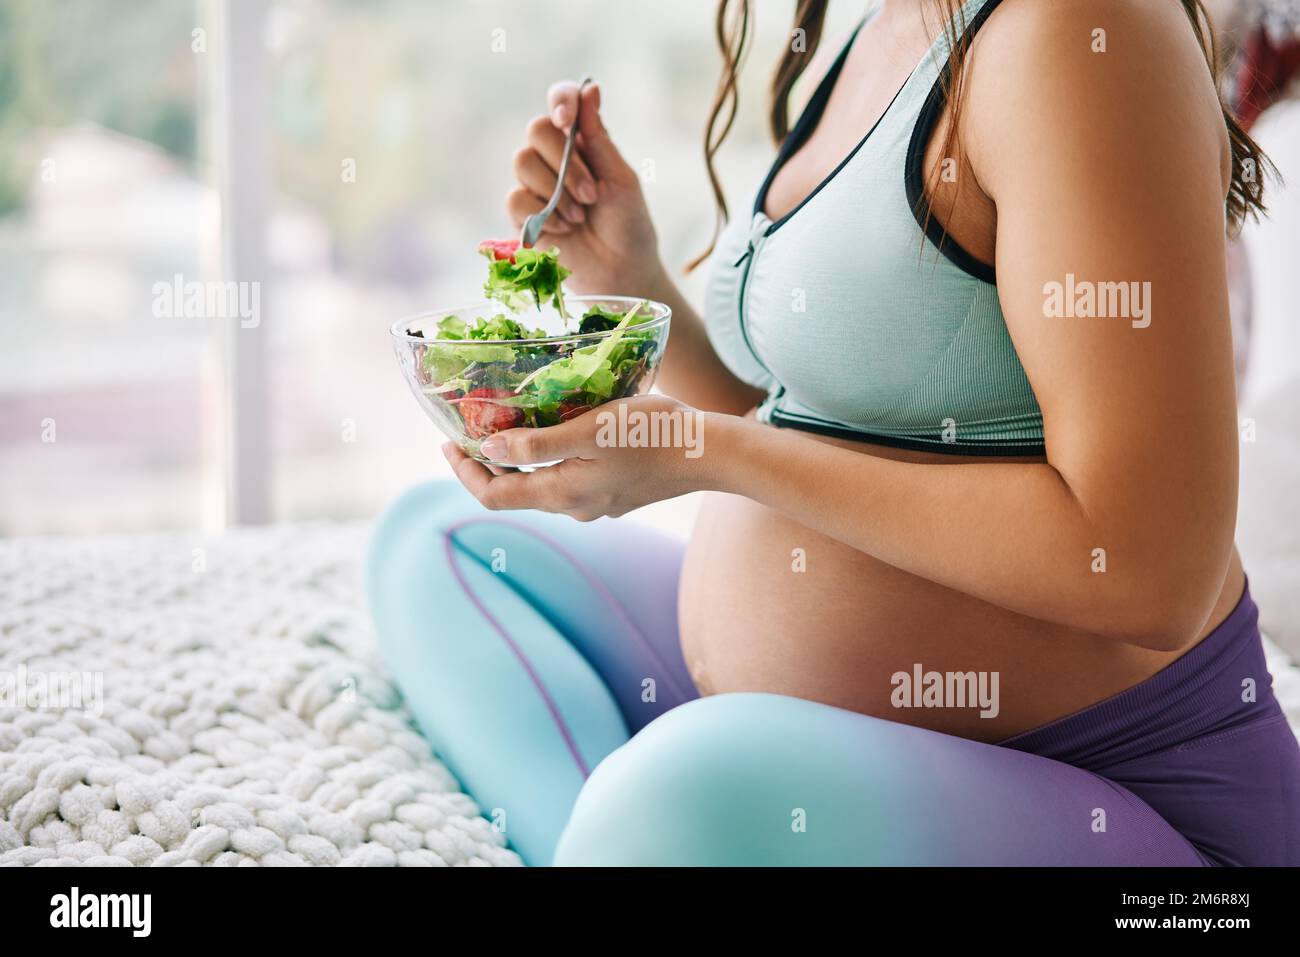 Gros plan portrait d'une femme enceinte en vêtements de sport mangeant une salade fraîche assise au lit Banque D'Images